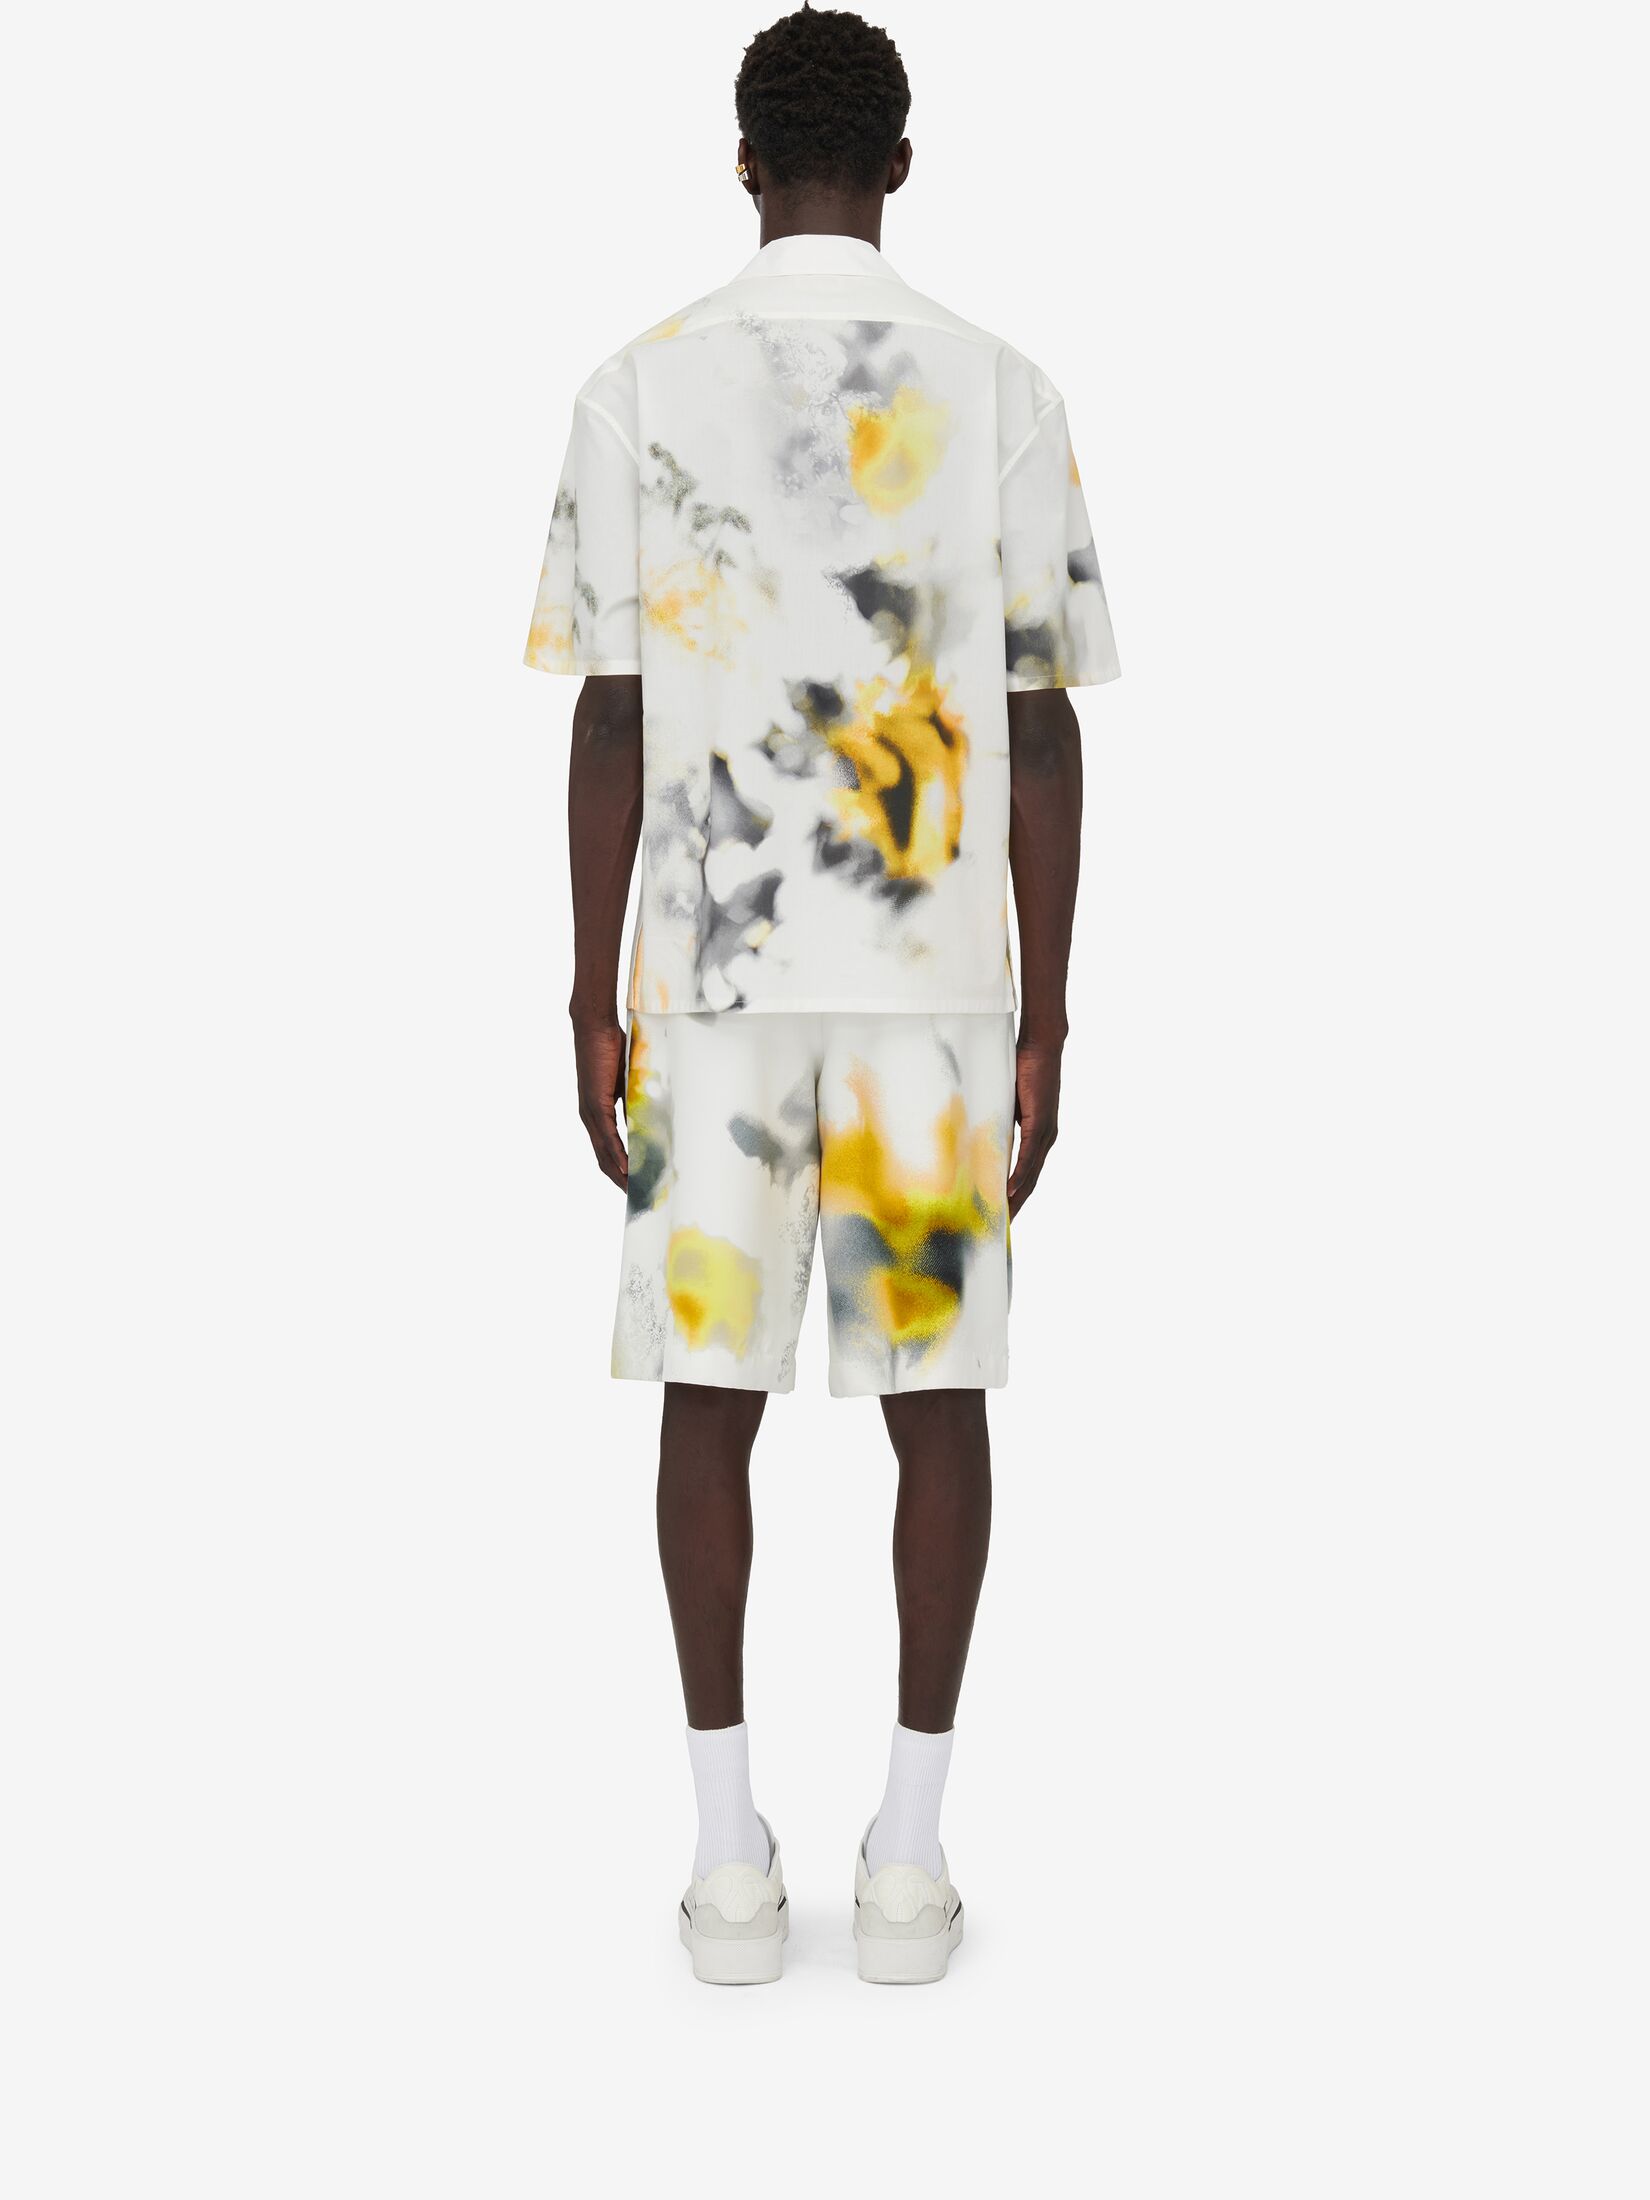 Bowlingshirt mit Obscured Flower-Motiv